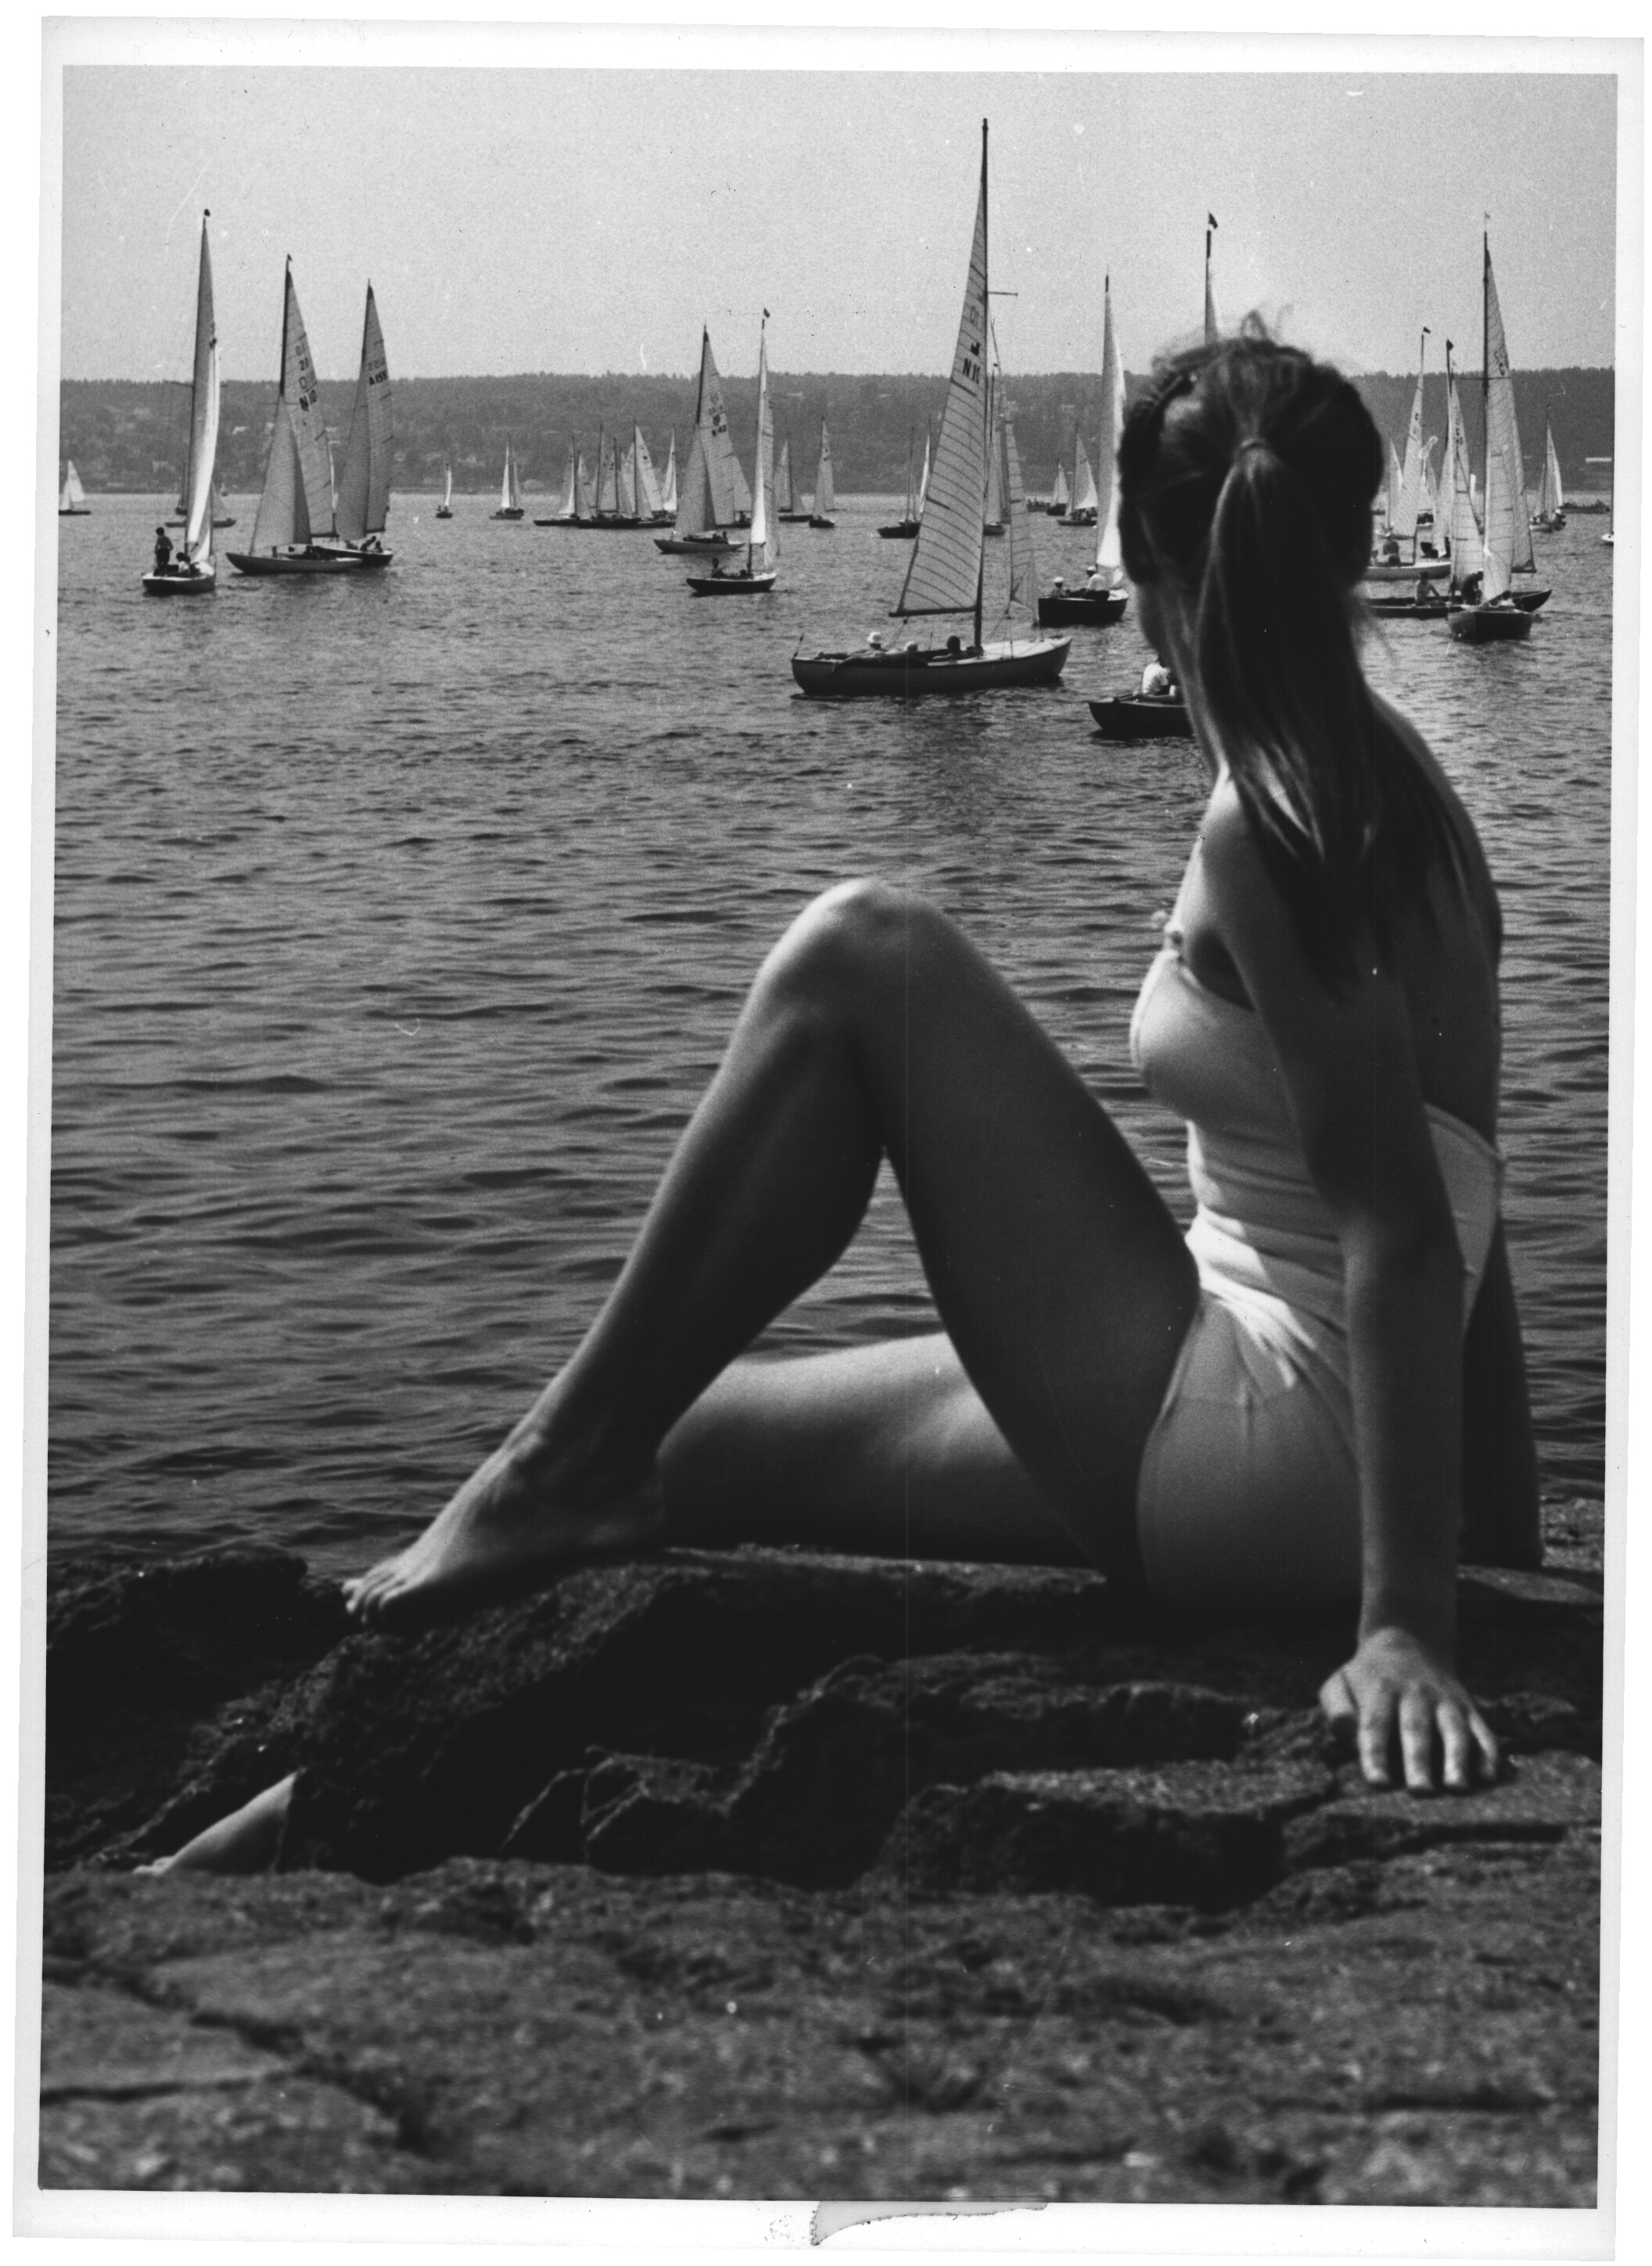 Пляжная жизнь на летнем побережье в городе Осгорстранн, Норвегия, 1957. Фотограф Пауль Андреас Рёстад